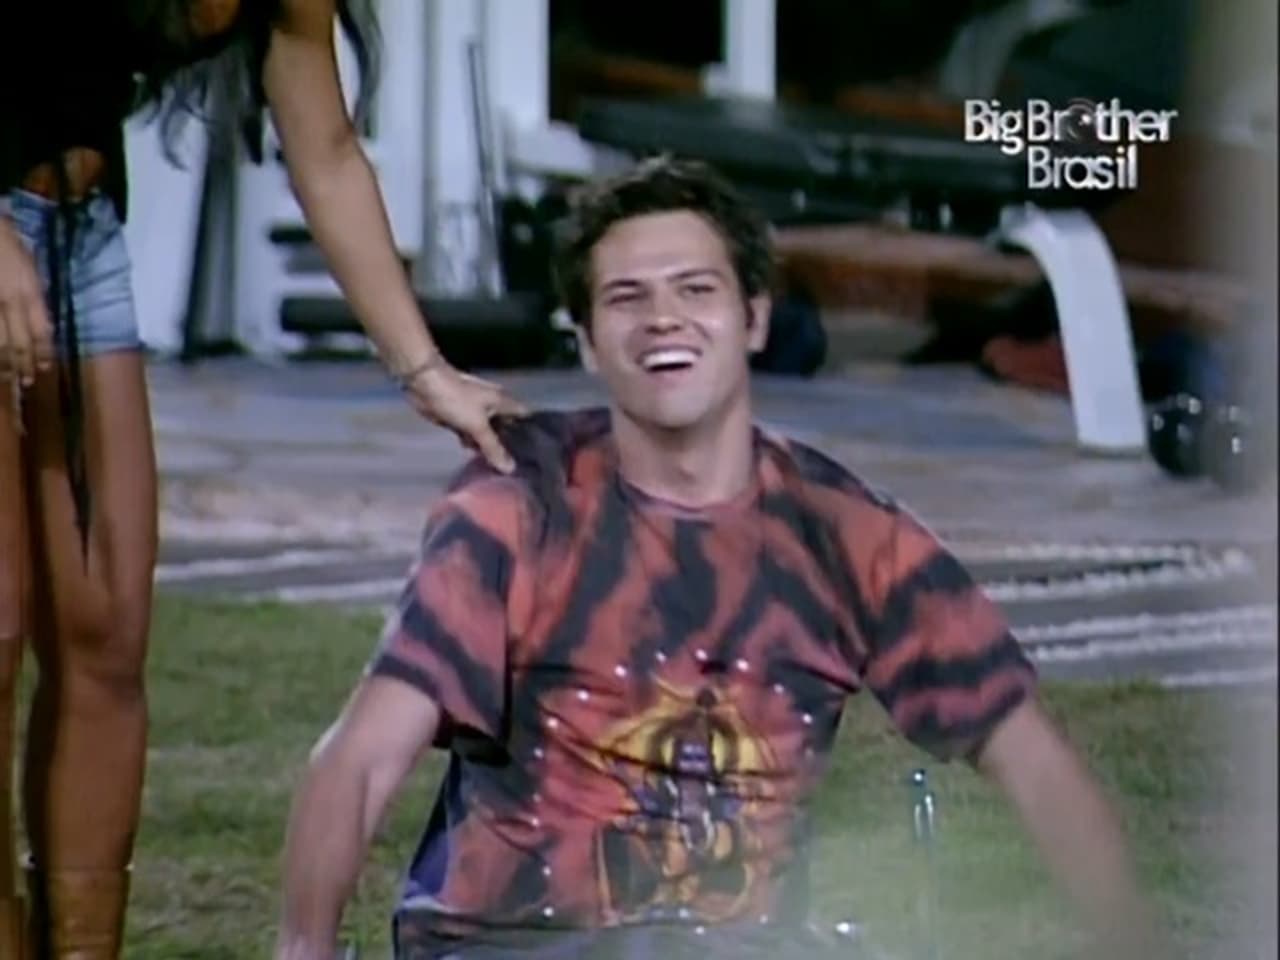 Big Brother Brasil - Season 3 Episode 45 : Episode 45